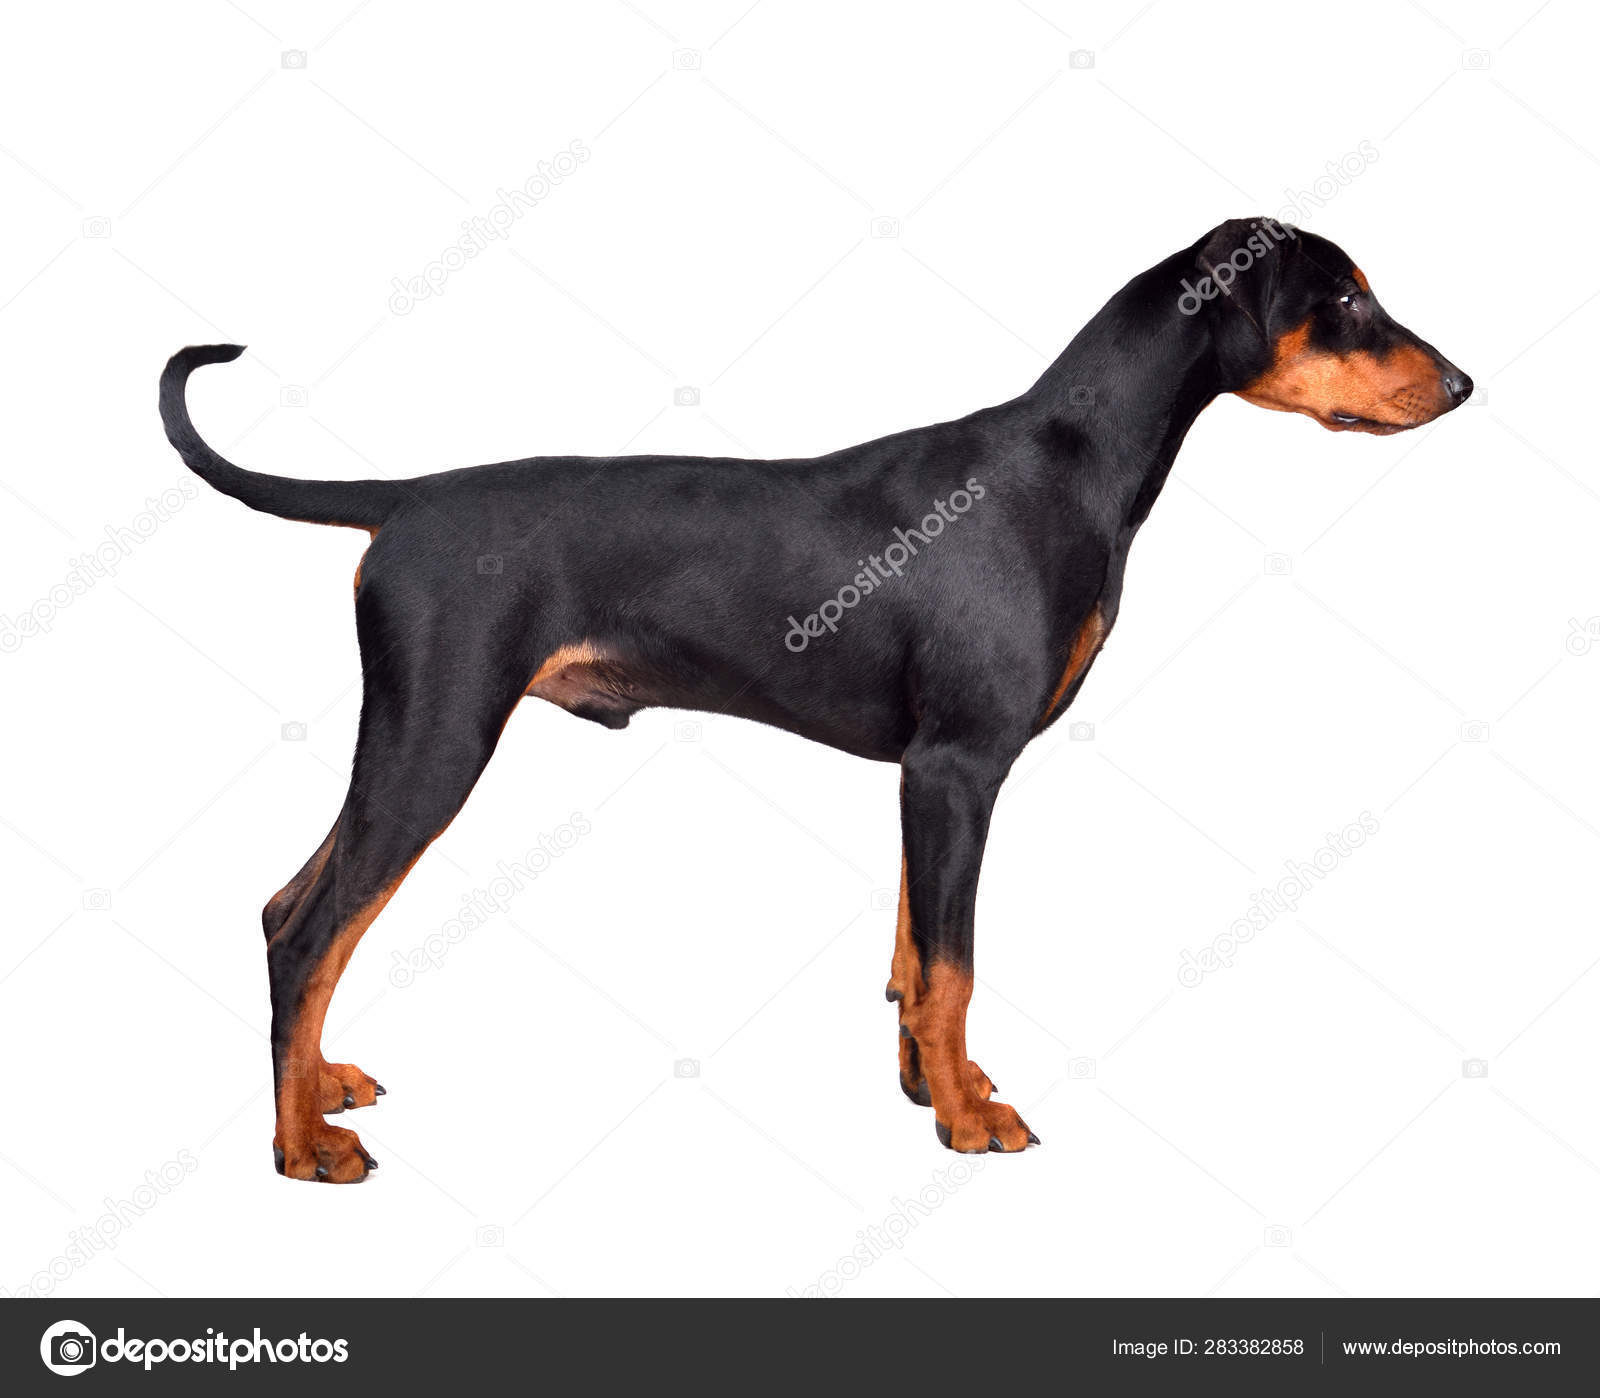 Standing Doberman Pinscher puppy Stock Photo by ©eAlisa 283382858